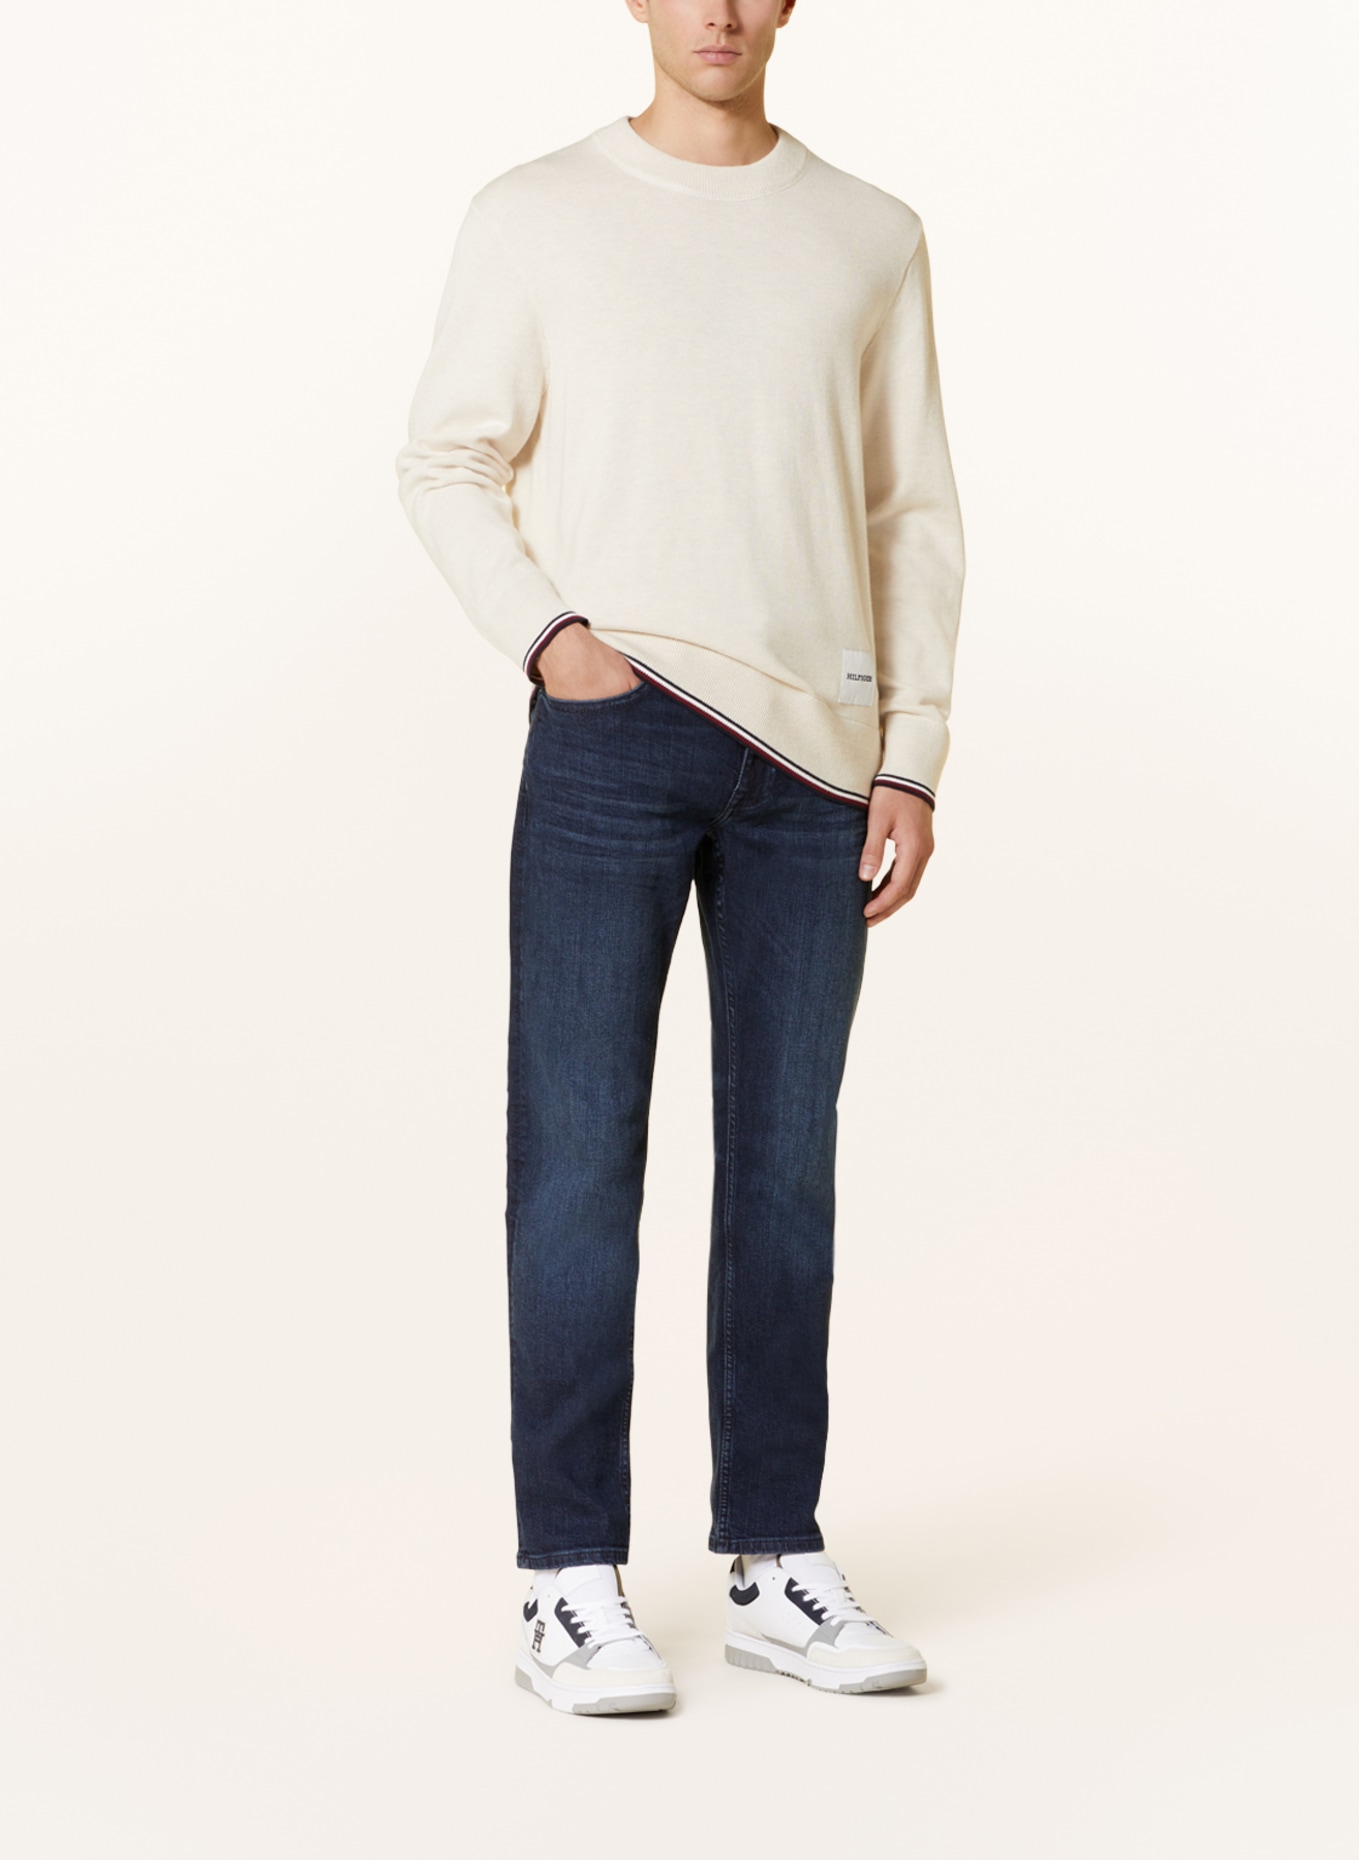 TOMMY HILFIGER Jeans DENTON Straight Fit, Farbe: 1BQ Orado Indigo (Bild 2)